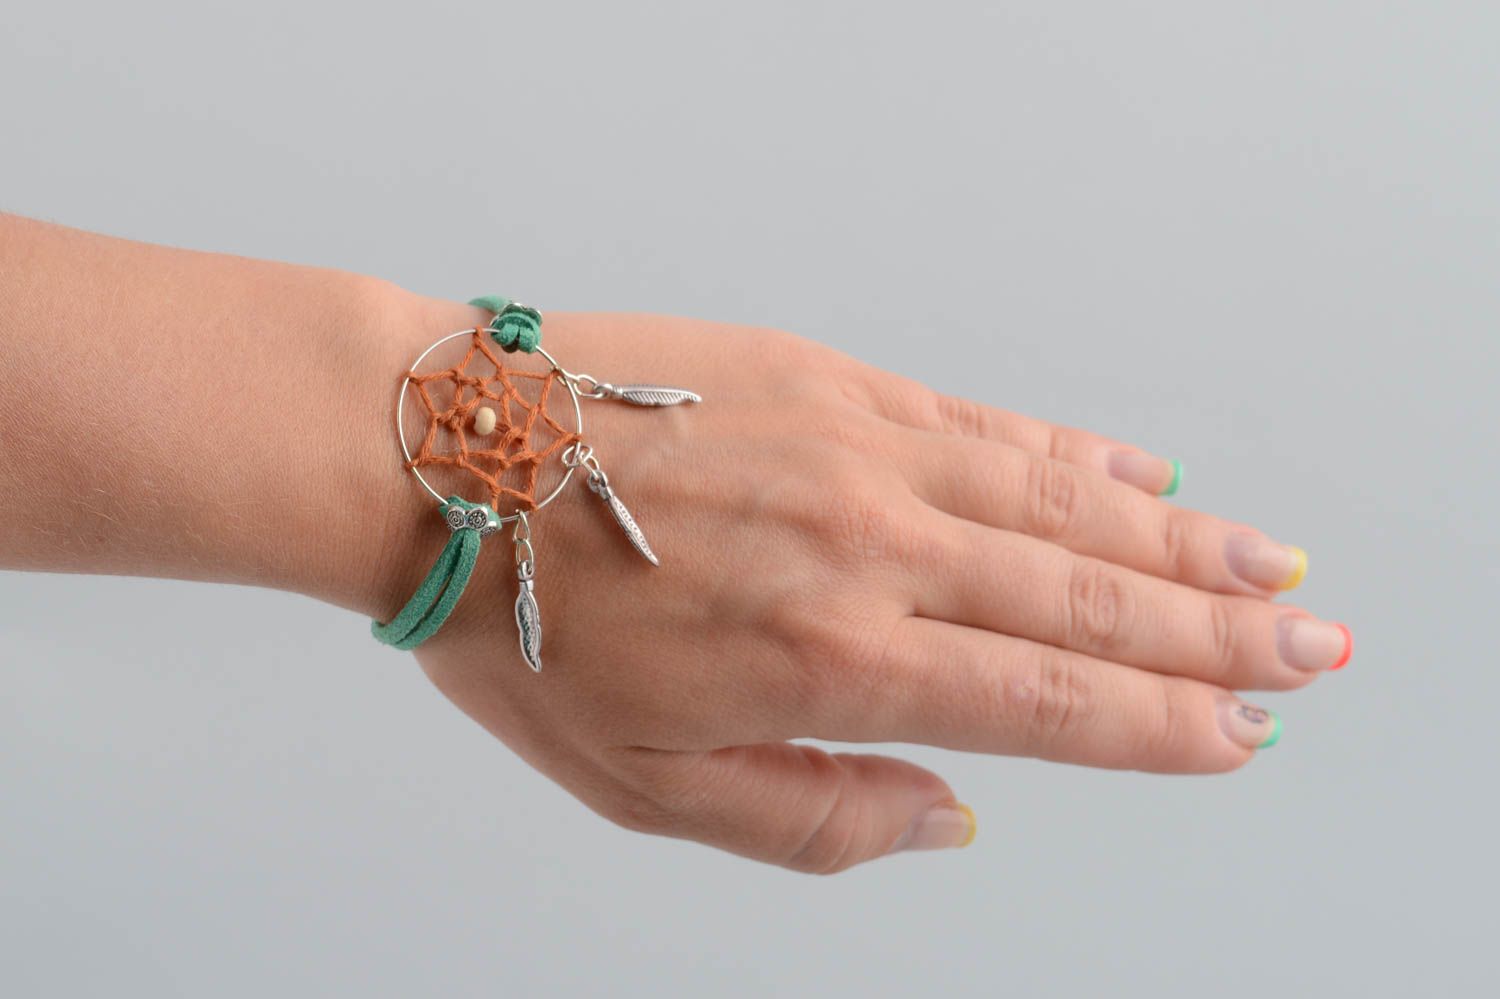 Traumfänger Armband in Grün auf Schnur Designer Talisman handgemacht schön foto 5